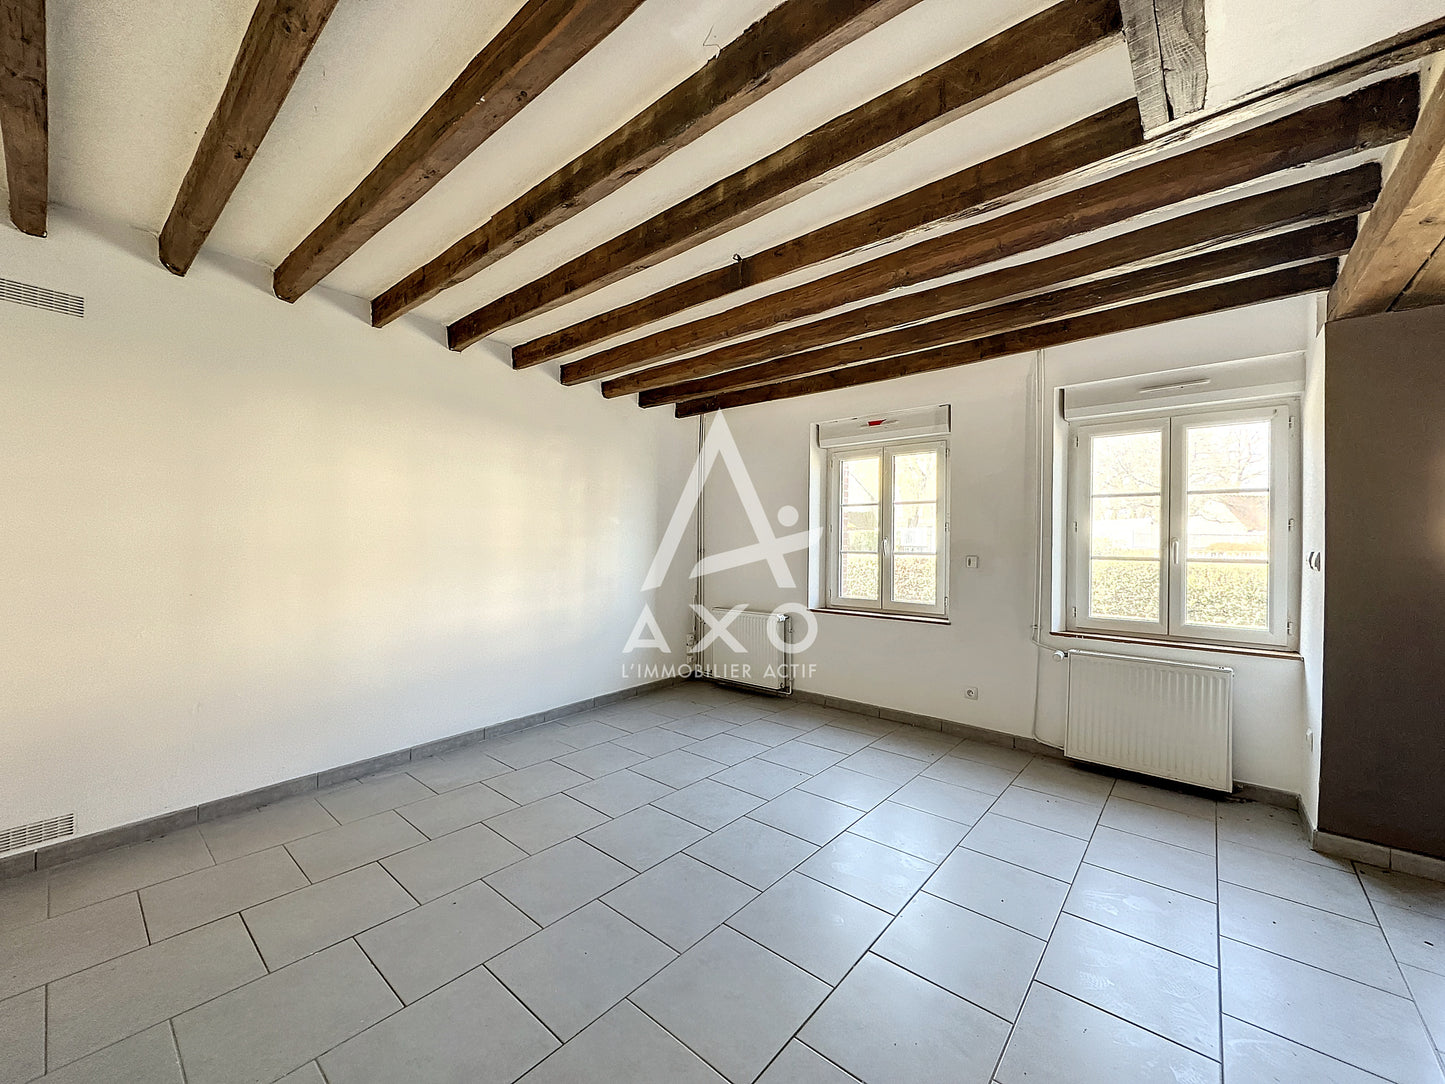 Longère à vendre 4 pièces - 100 m² - La Framboisière (28250)